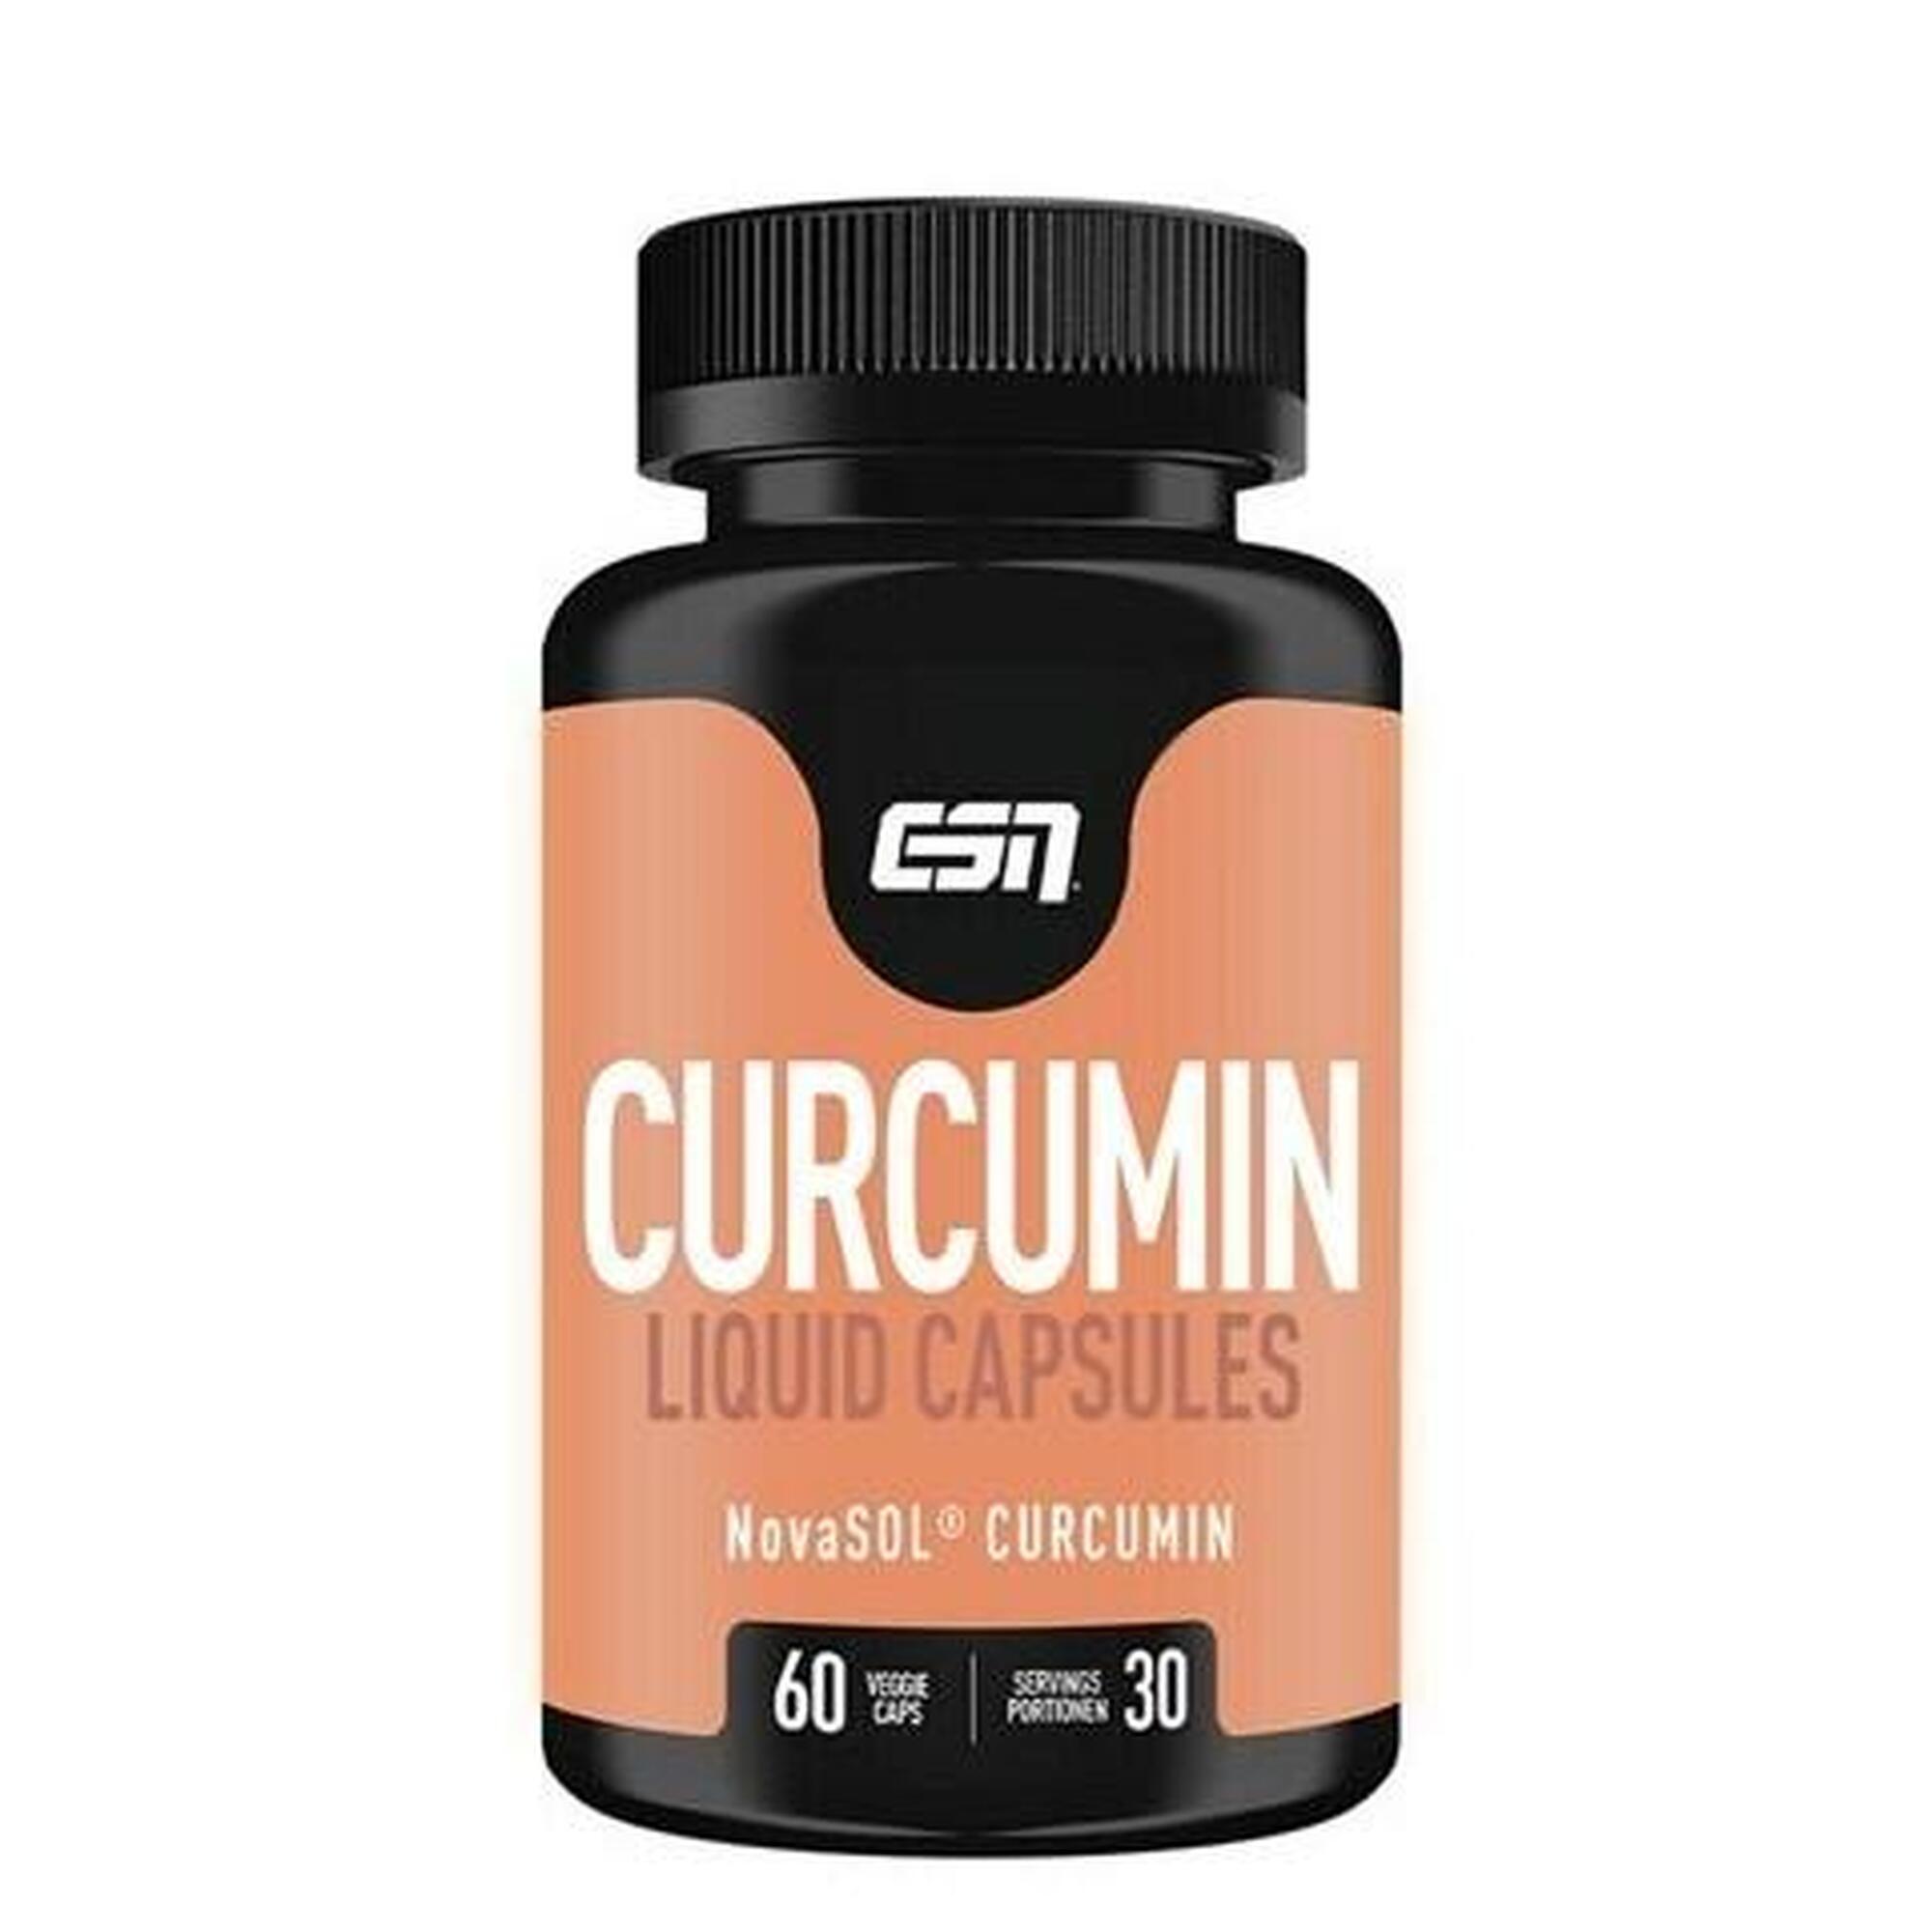 Curcumin Liquid Capsules